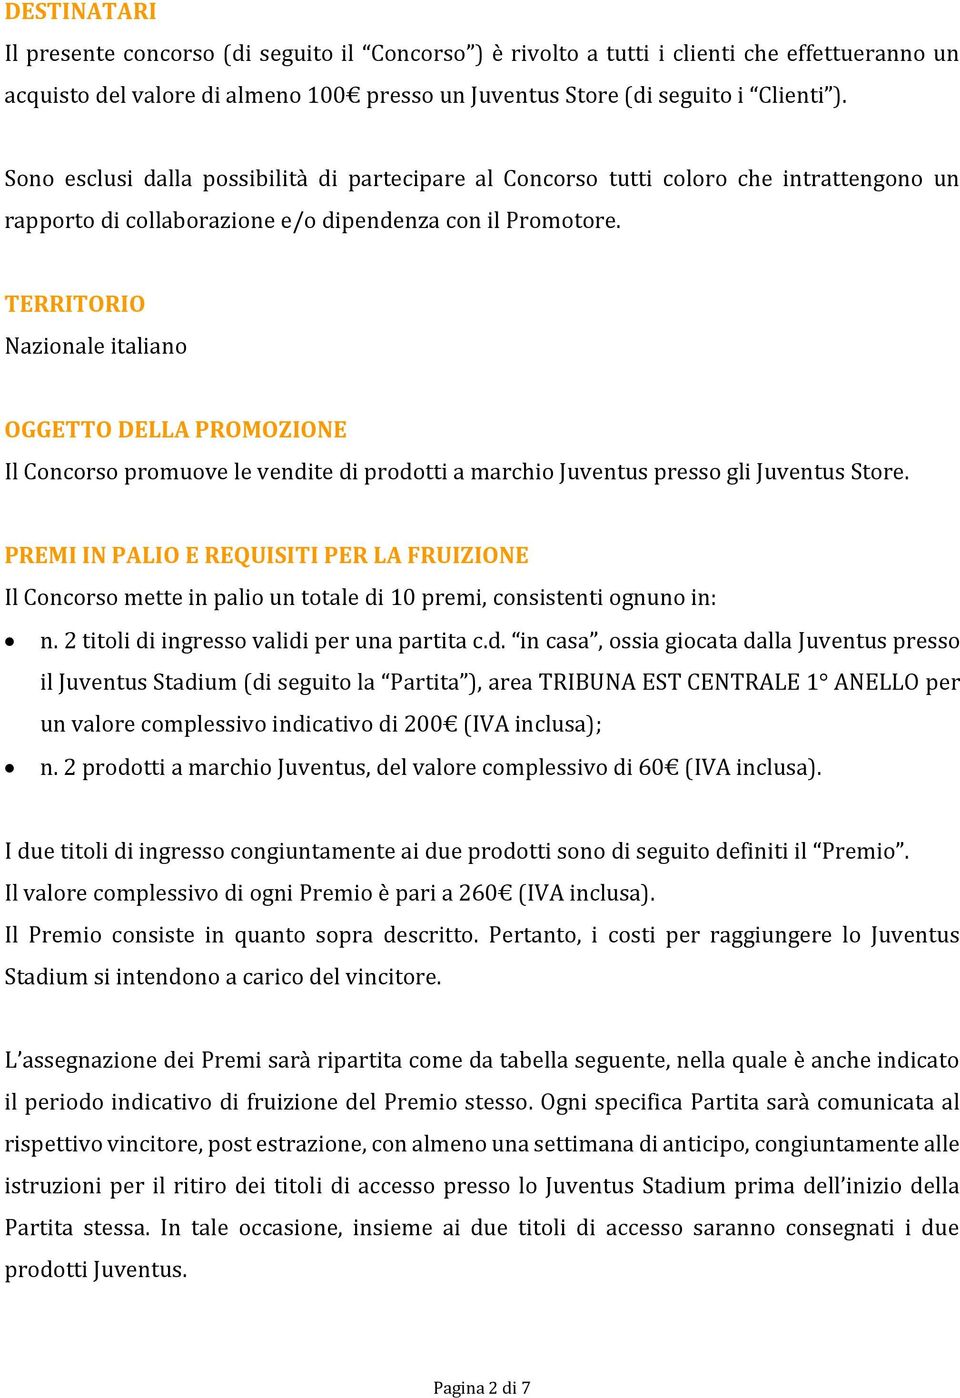 TERRITORIO Nazionale italiano OGGETTO DELLA PROMOZIONE Il Concorso promuove le vendite di prodotti a marchio Juventus presso gli Juventus Store.